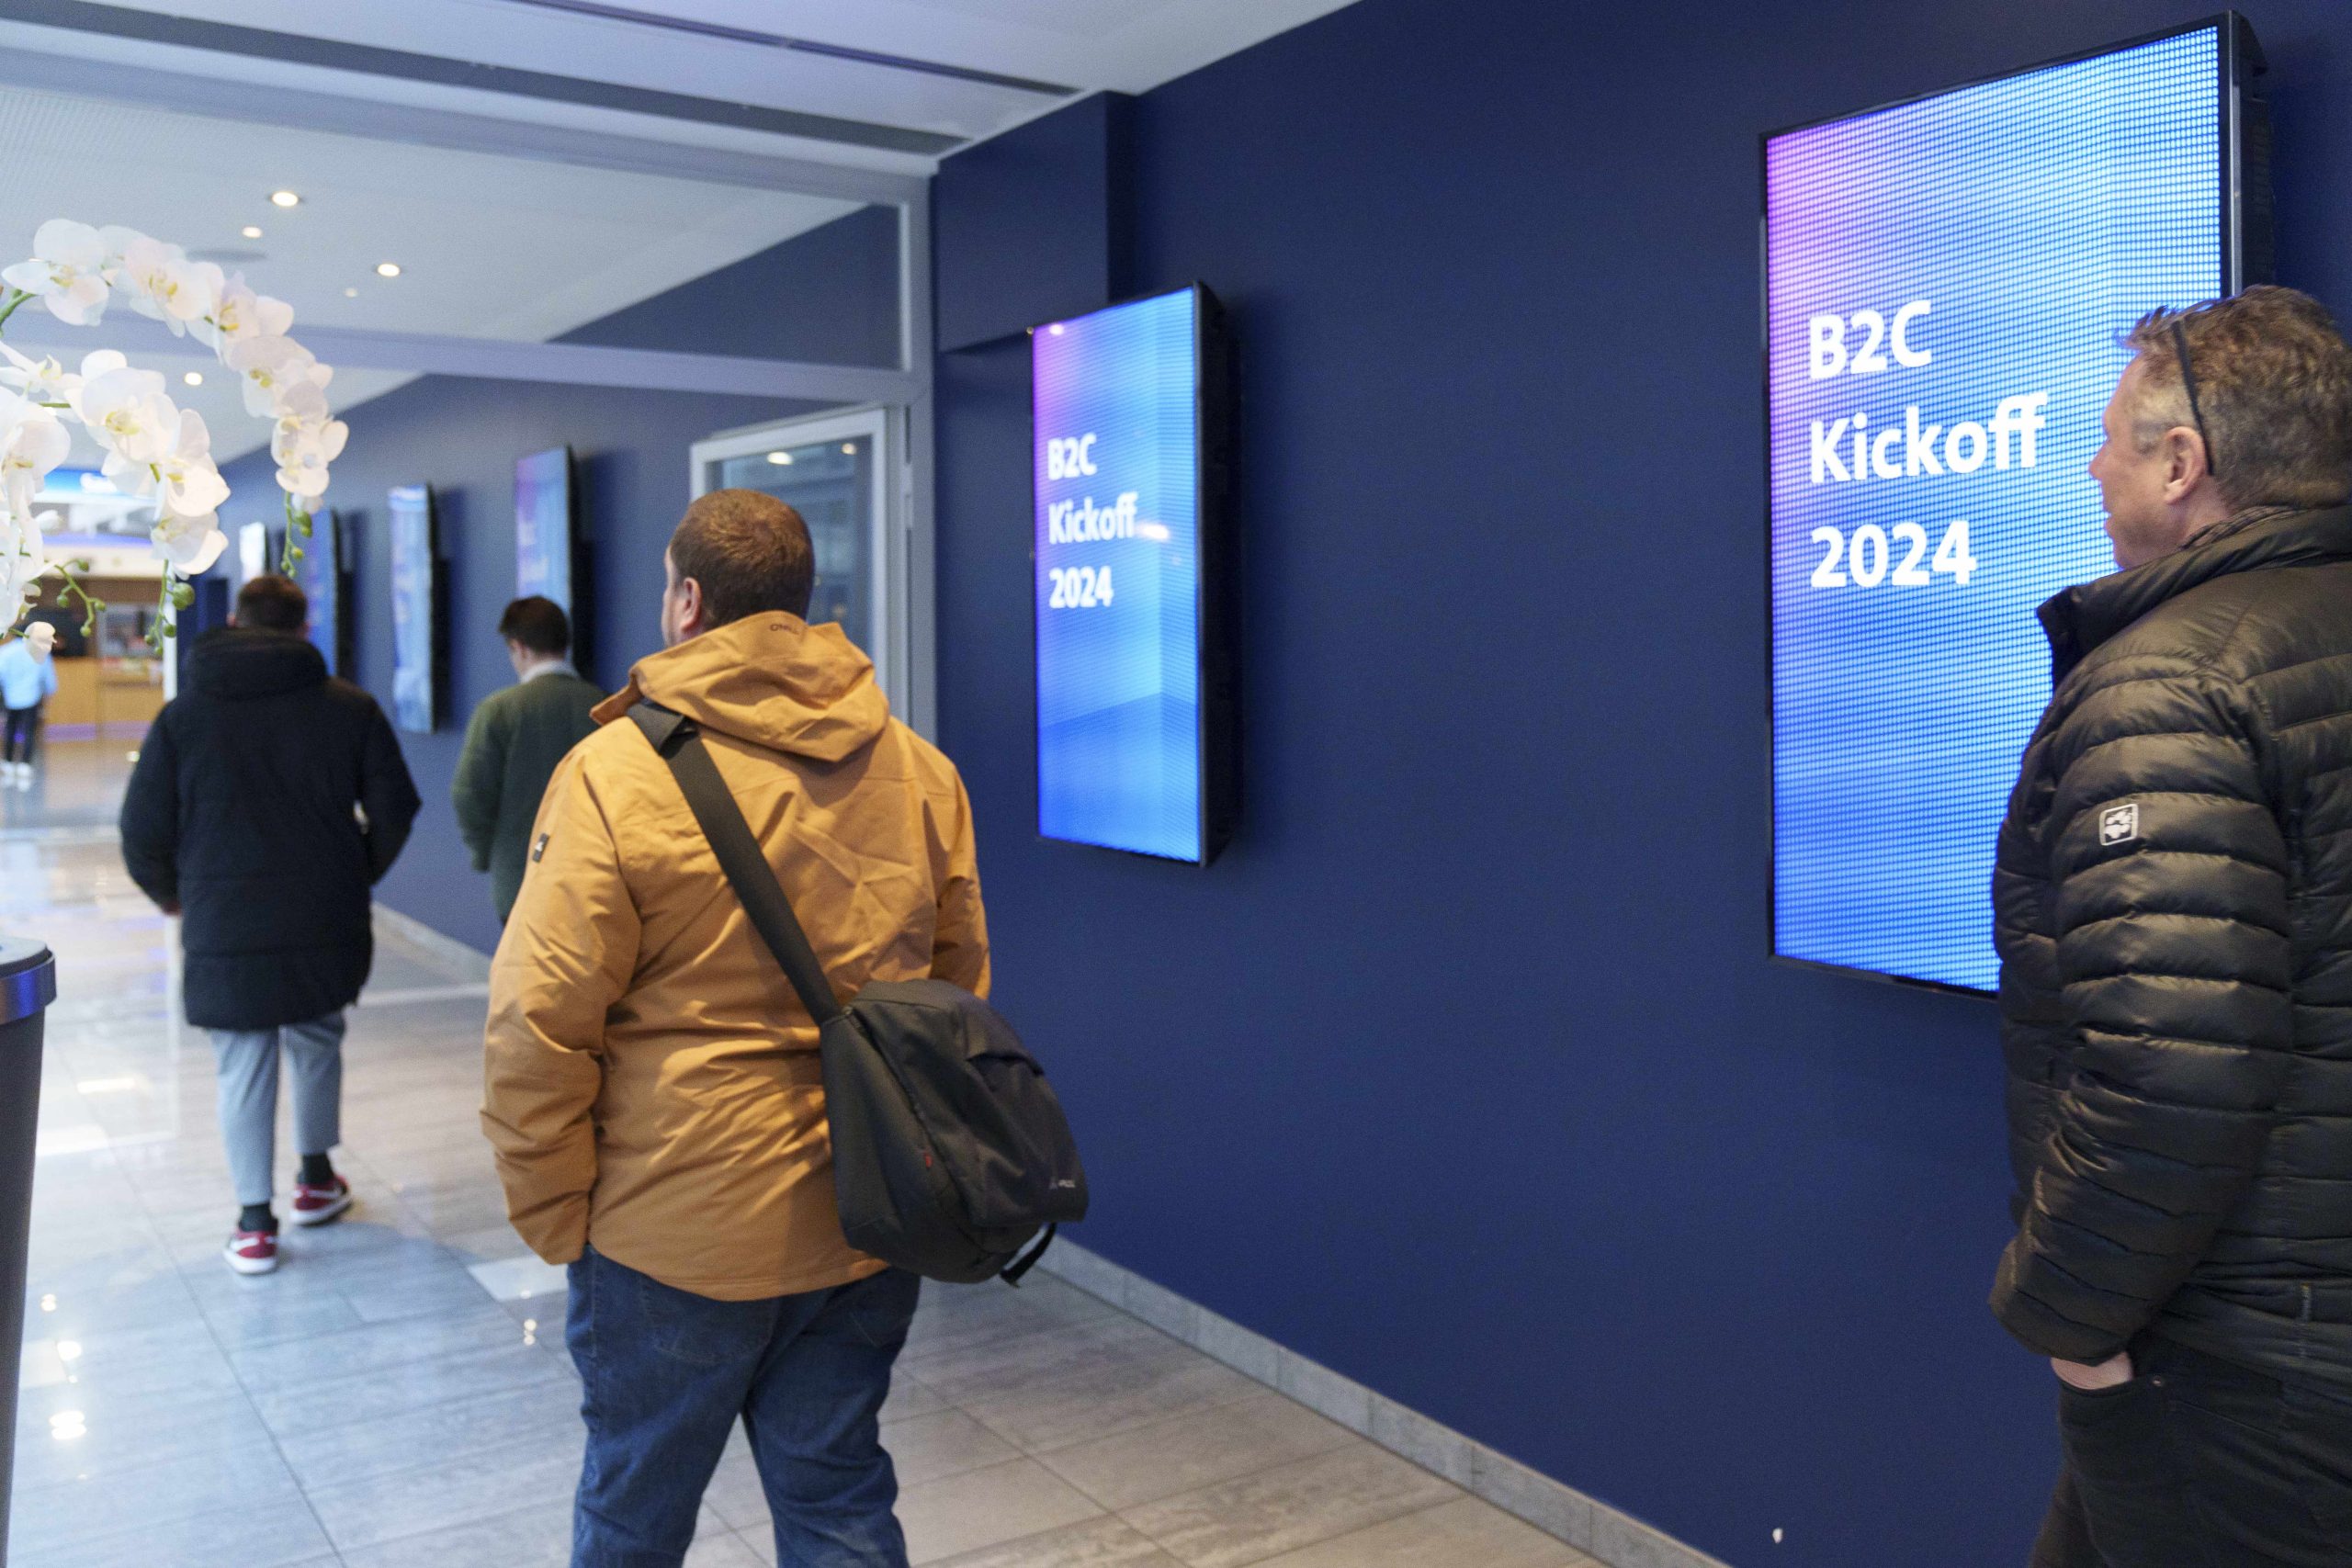 Des visiteurs regardent un panneau publicitaire numérique annonçant "B2C Kickoff 2024" dans le hall du cinéma.